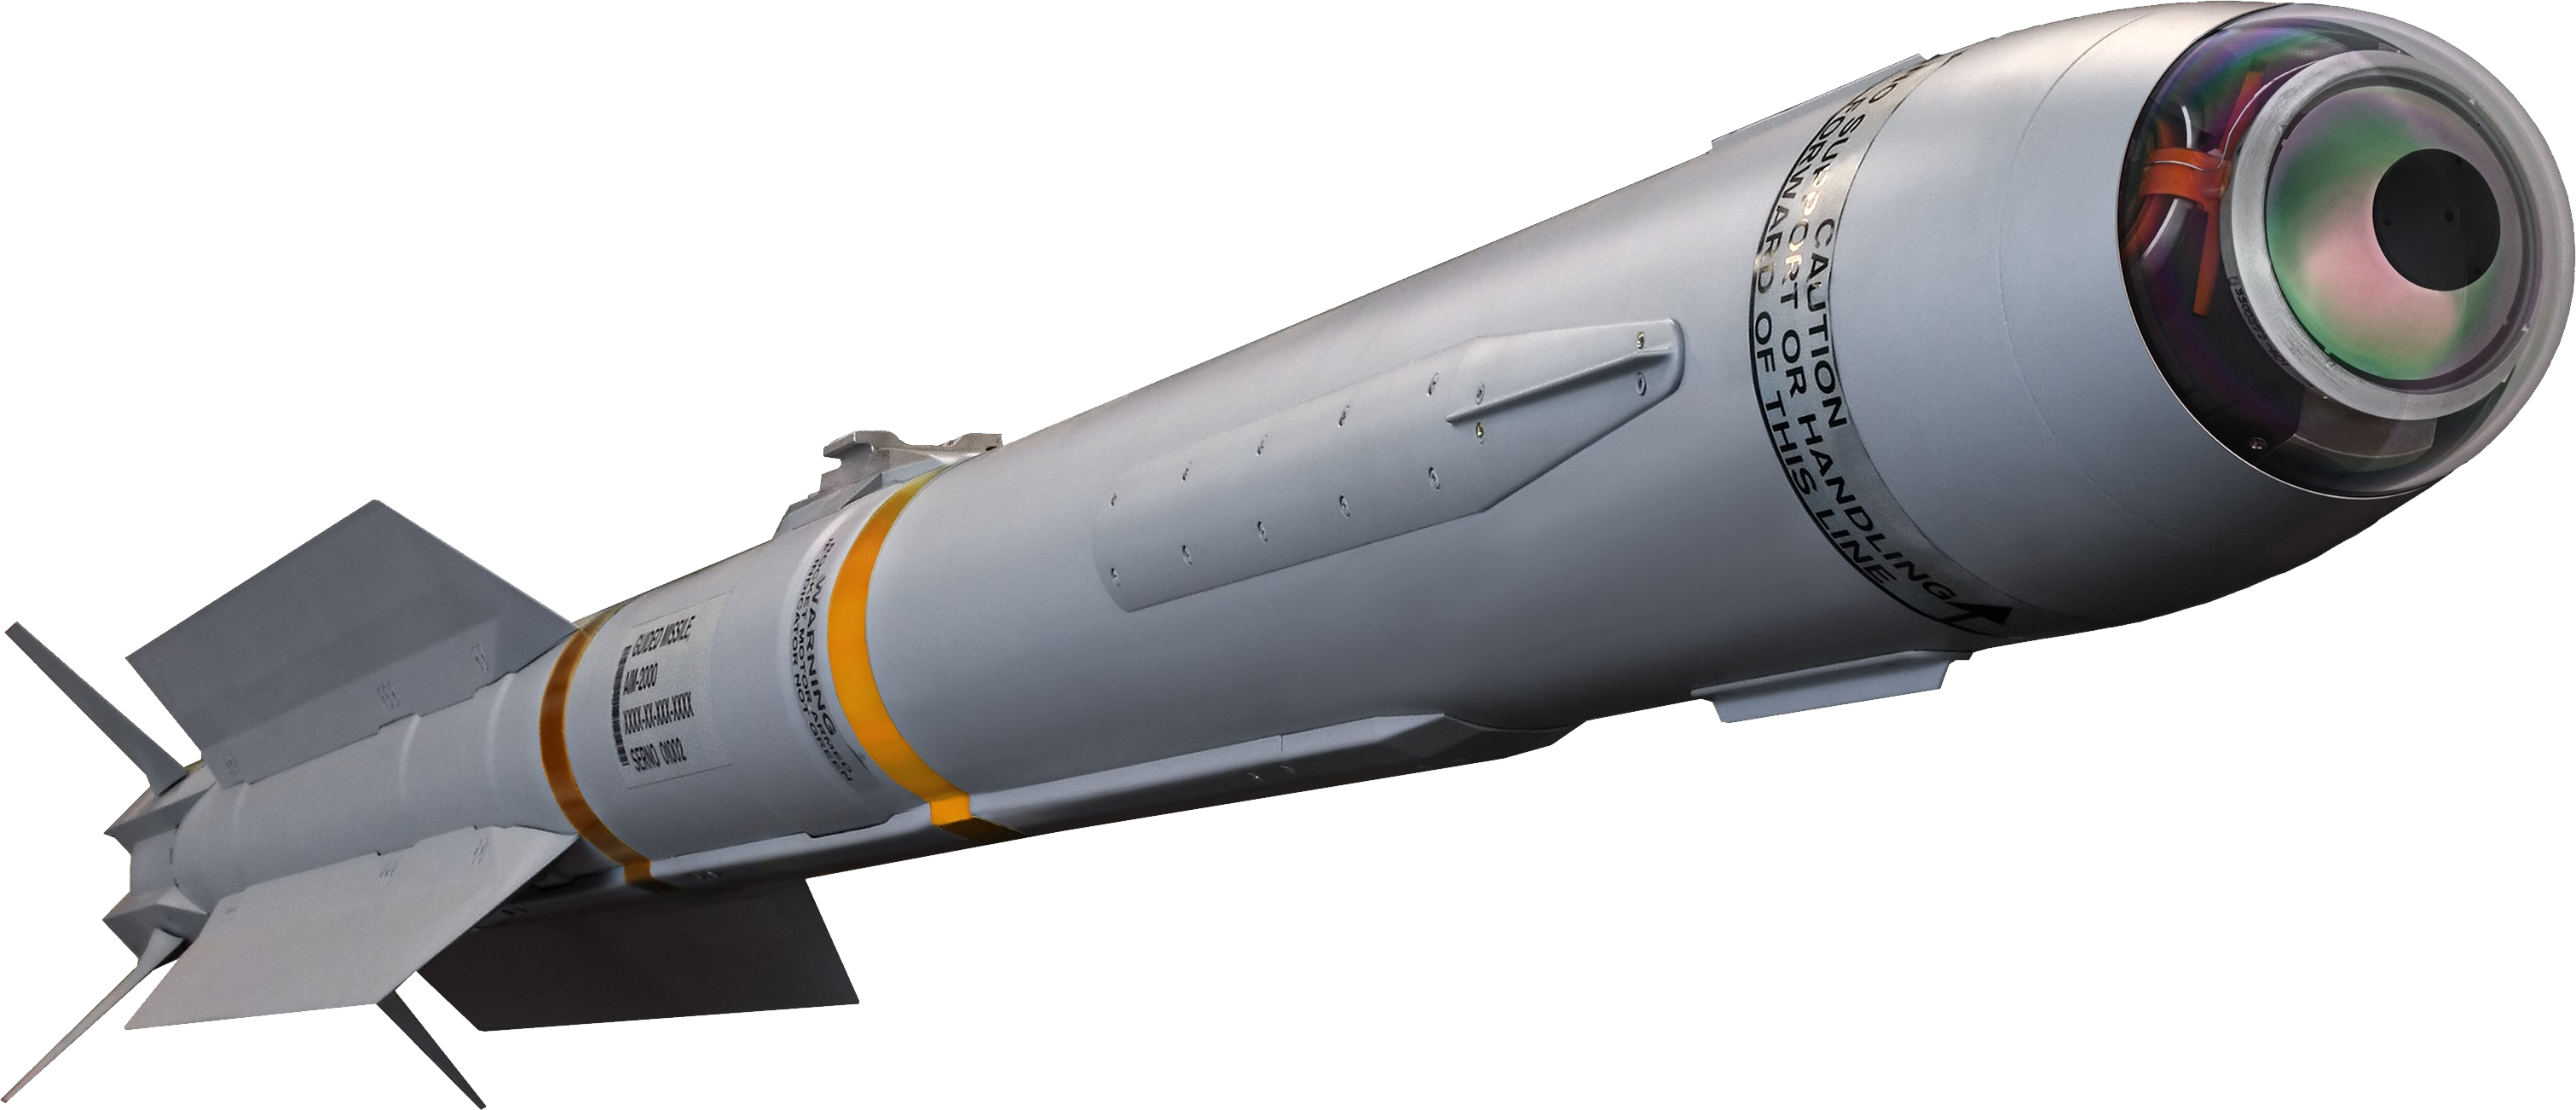 Missile Rocket Background PNG Image